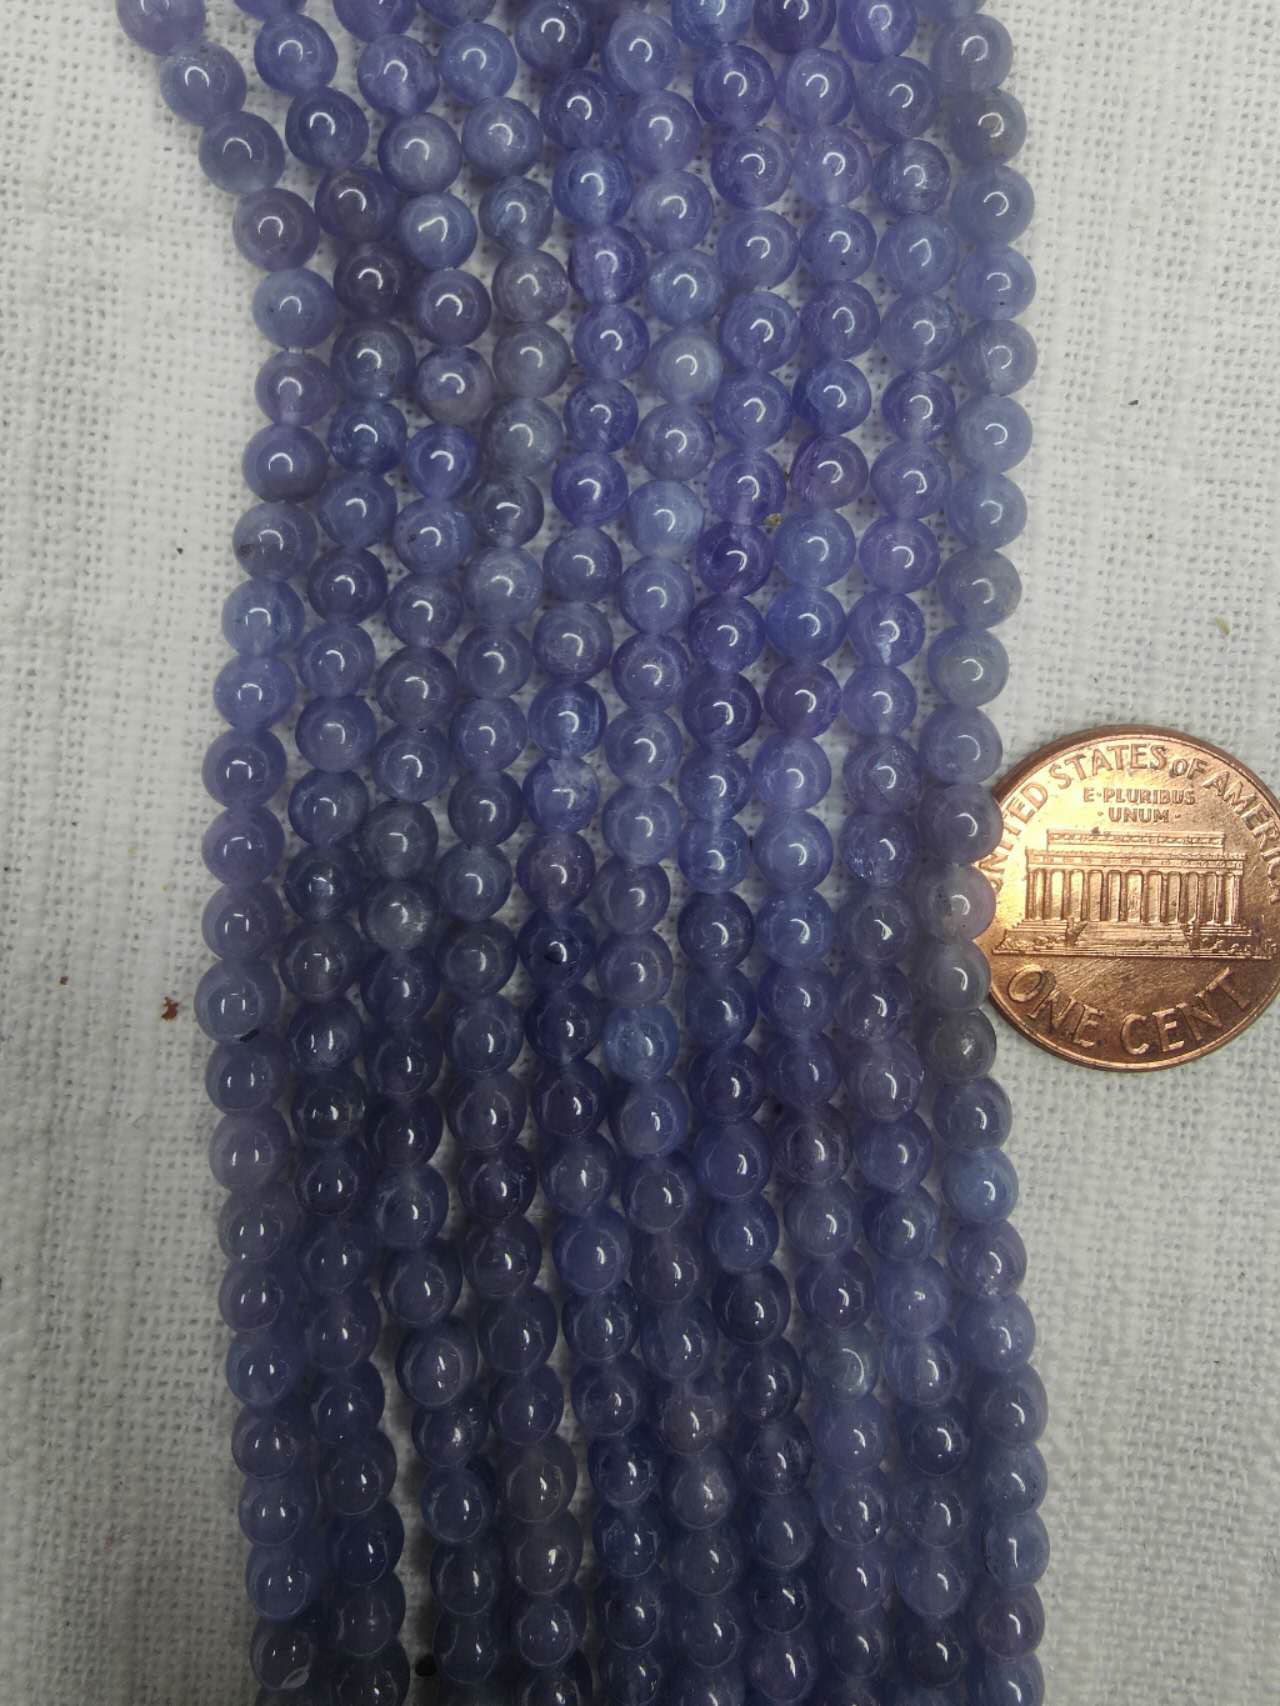 Tanzanite 4mm round beads AAA grade 15.5"strand